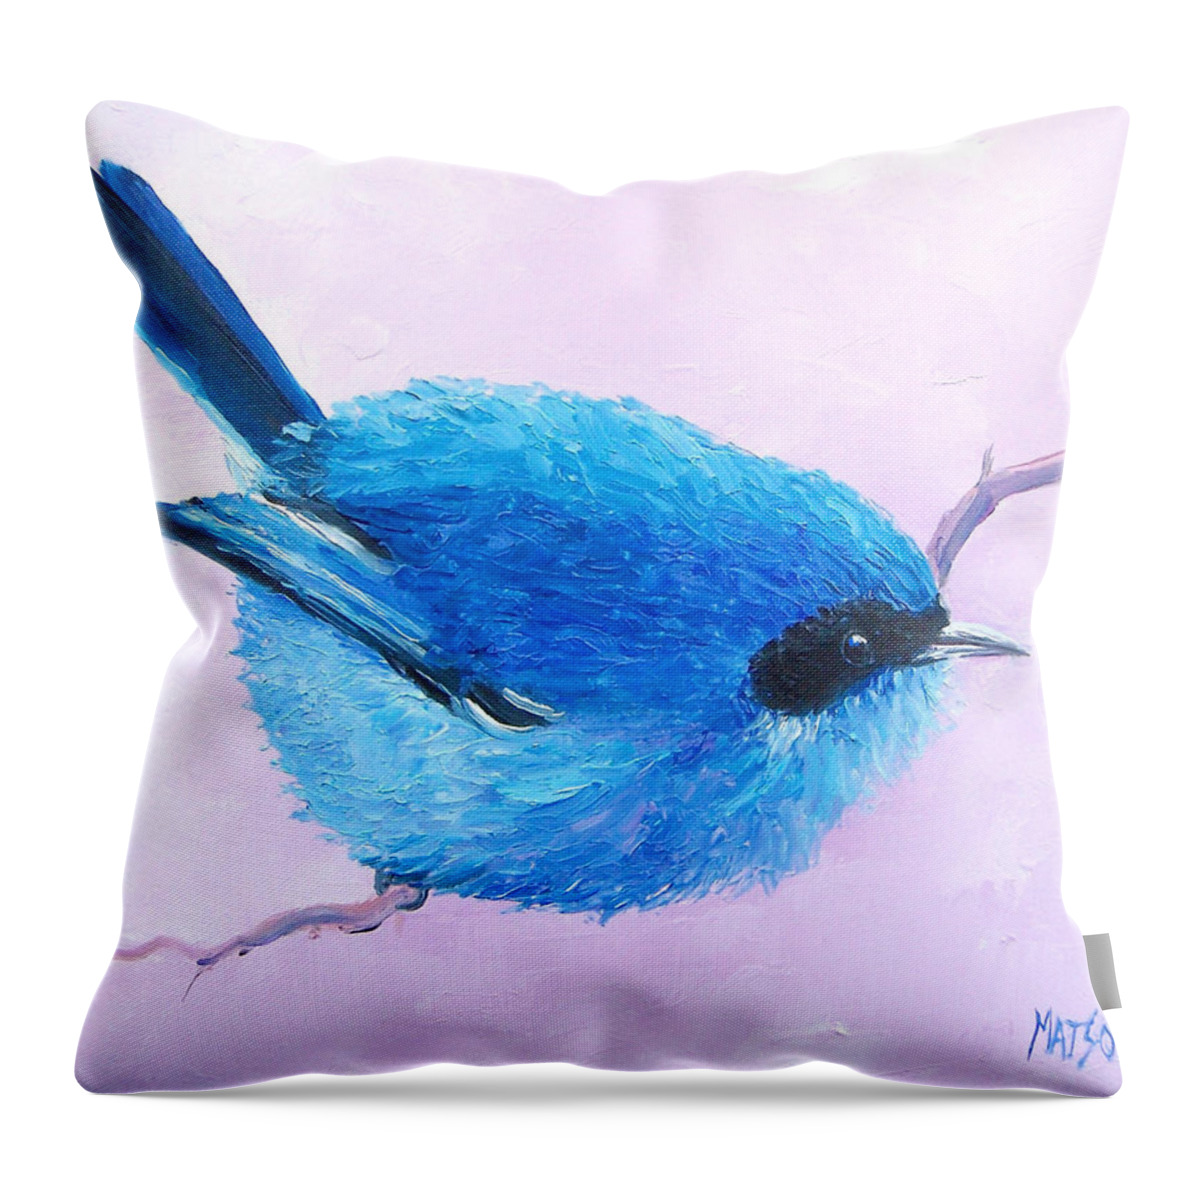 Bluebird Throw Pillow featuring the painting Bluebird by Jan Matson